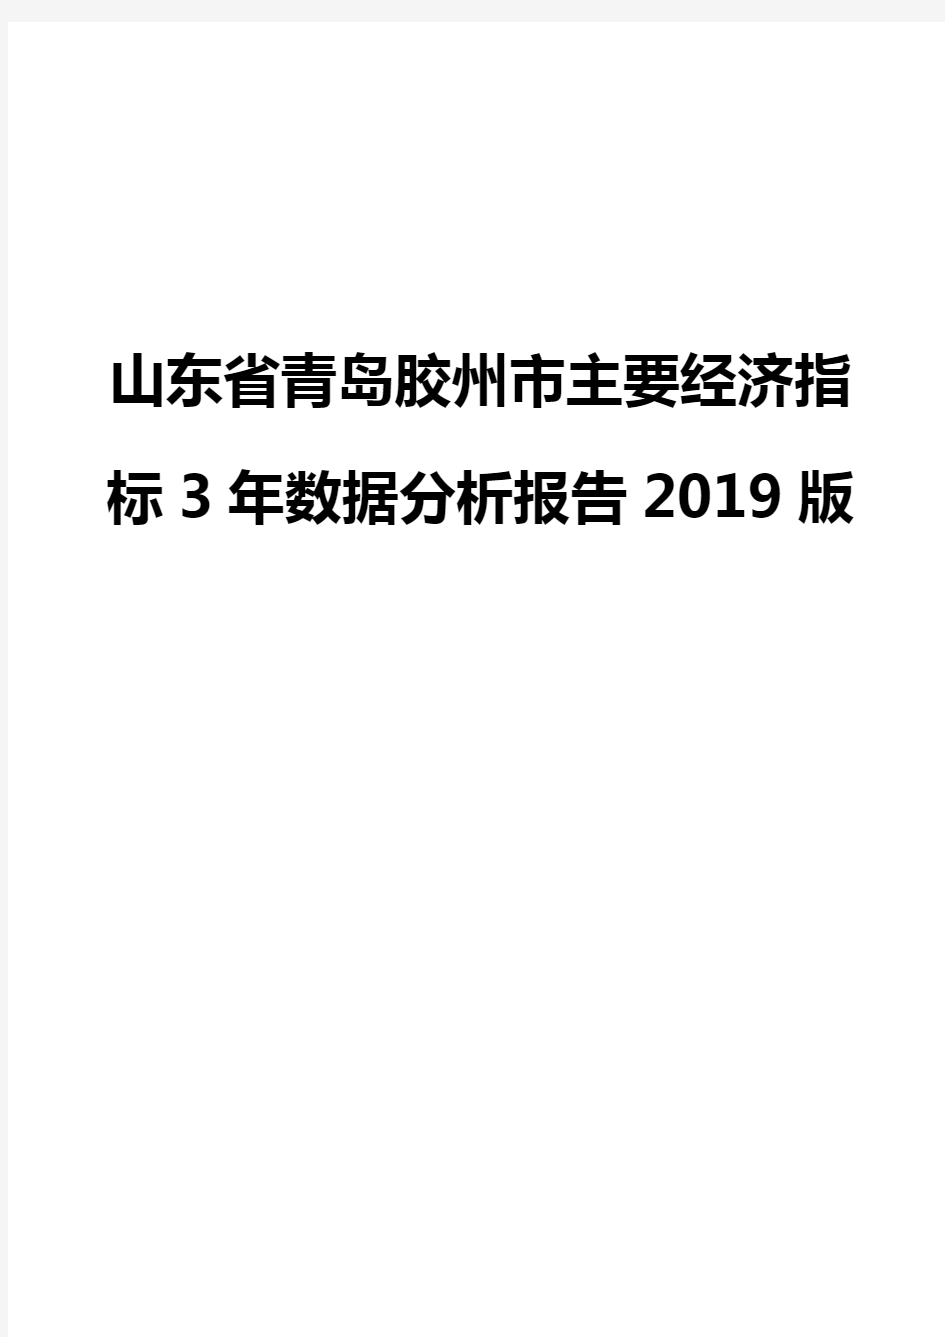 山东省青岛胶州市主要经济指标3年数据分析报告2019版